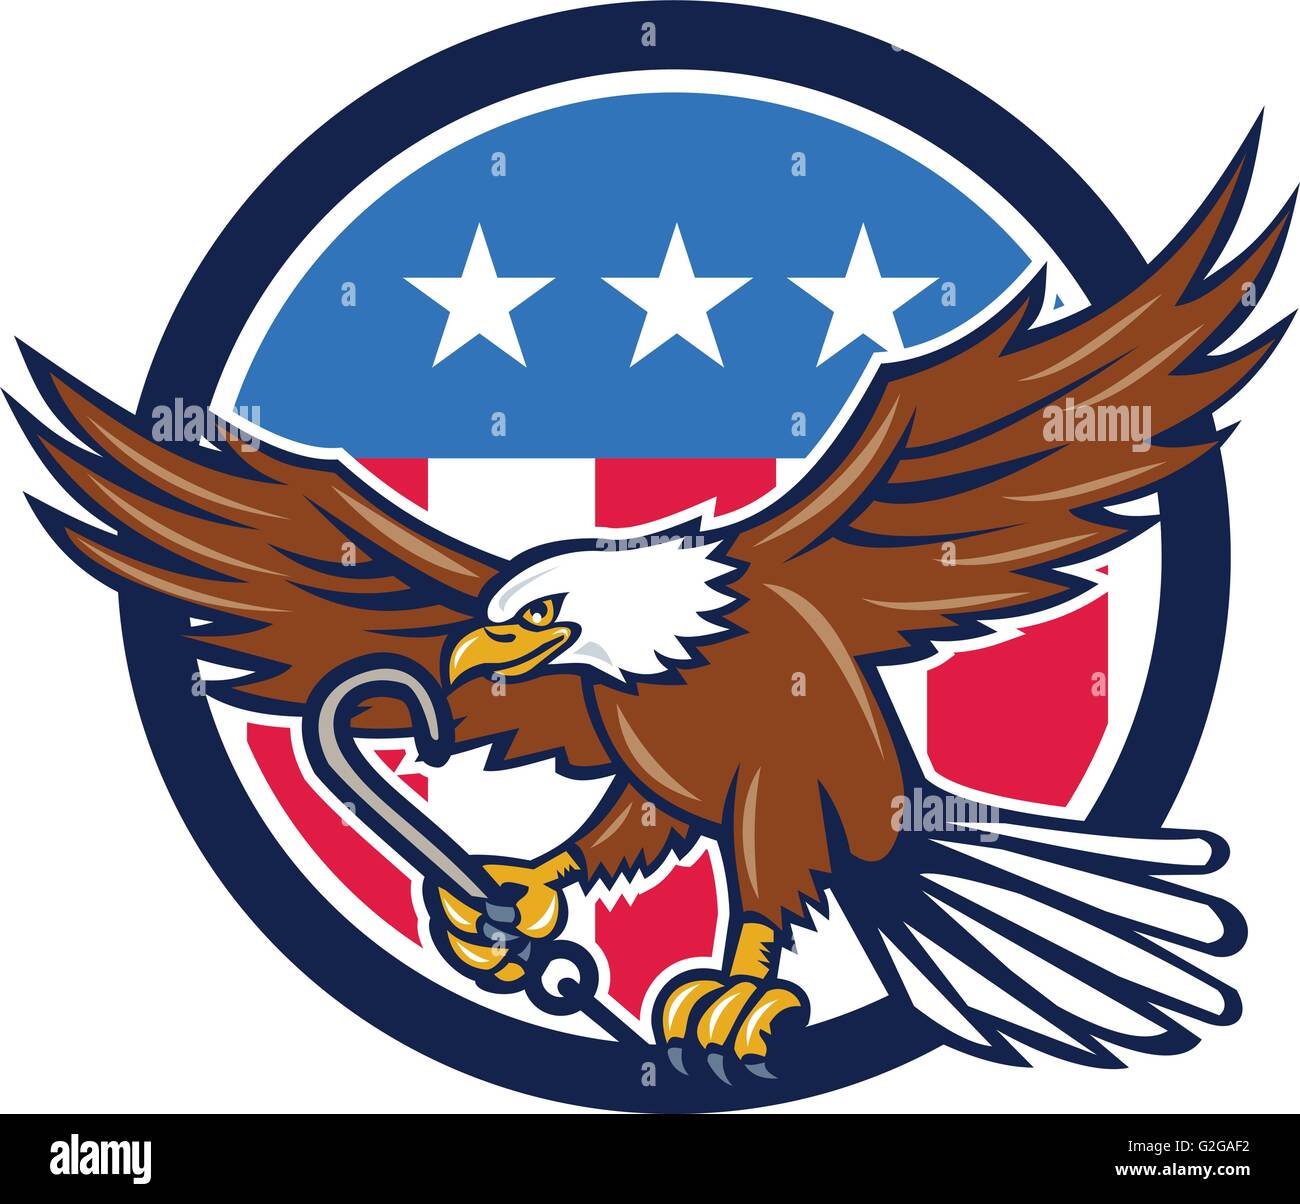 Ilustración de un águila calva americana agarrando el remolque j gancho con  su talon vistos de lado establecer dentro del círculo de estrellas de   Imagen Vector de stock - Alamy